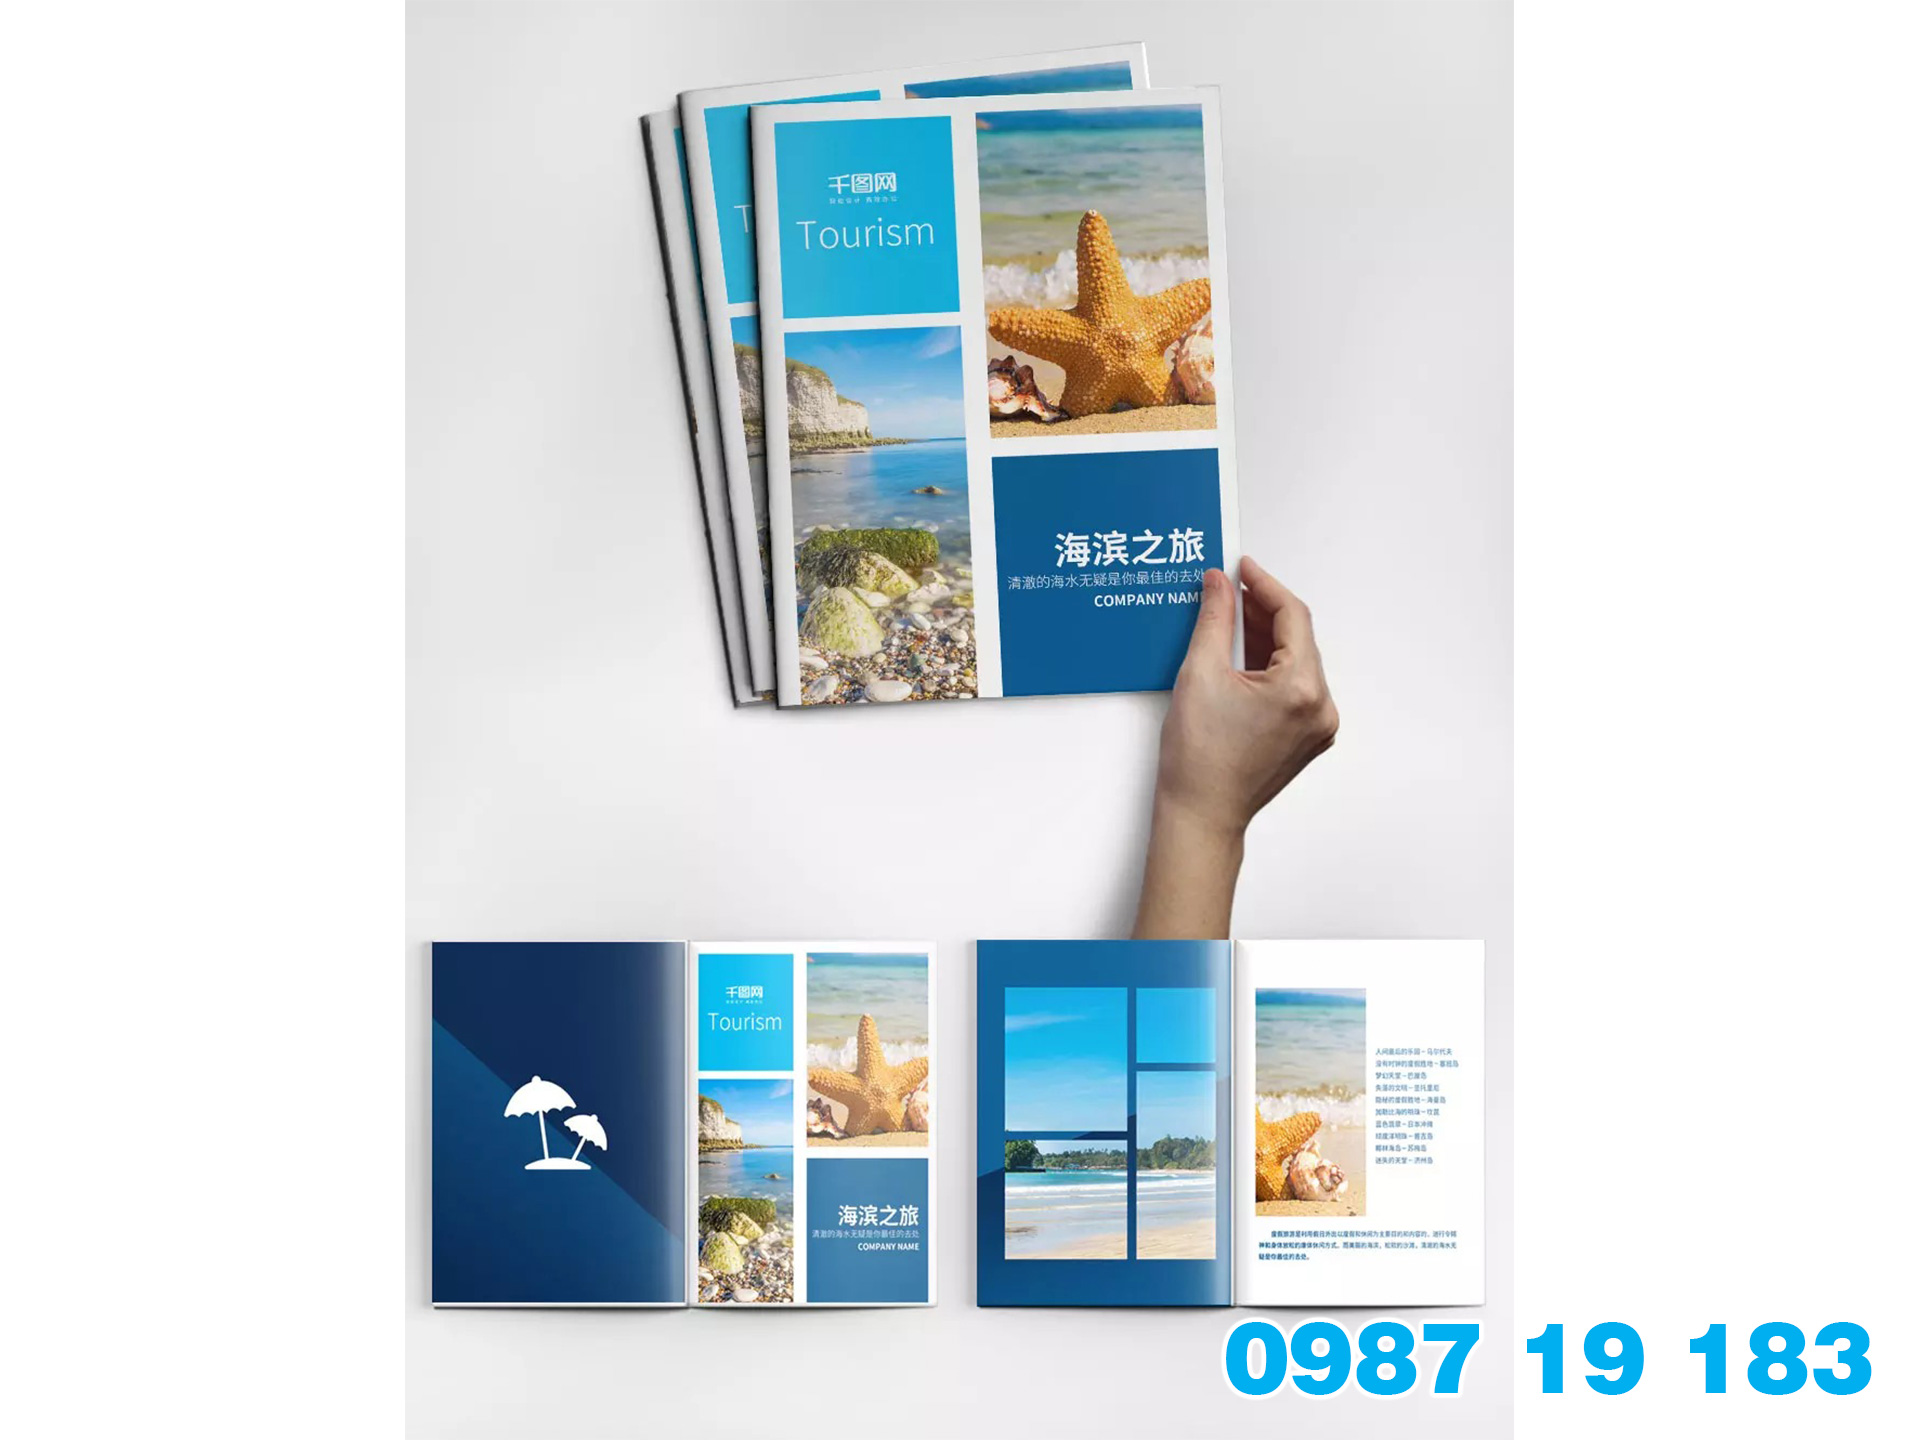 Mẫu brochure giới thiệu thông tin về công ty du lịch